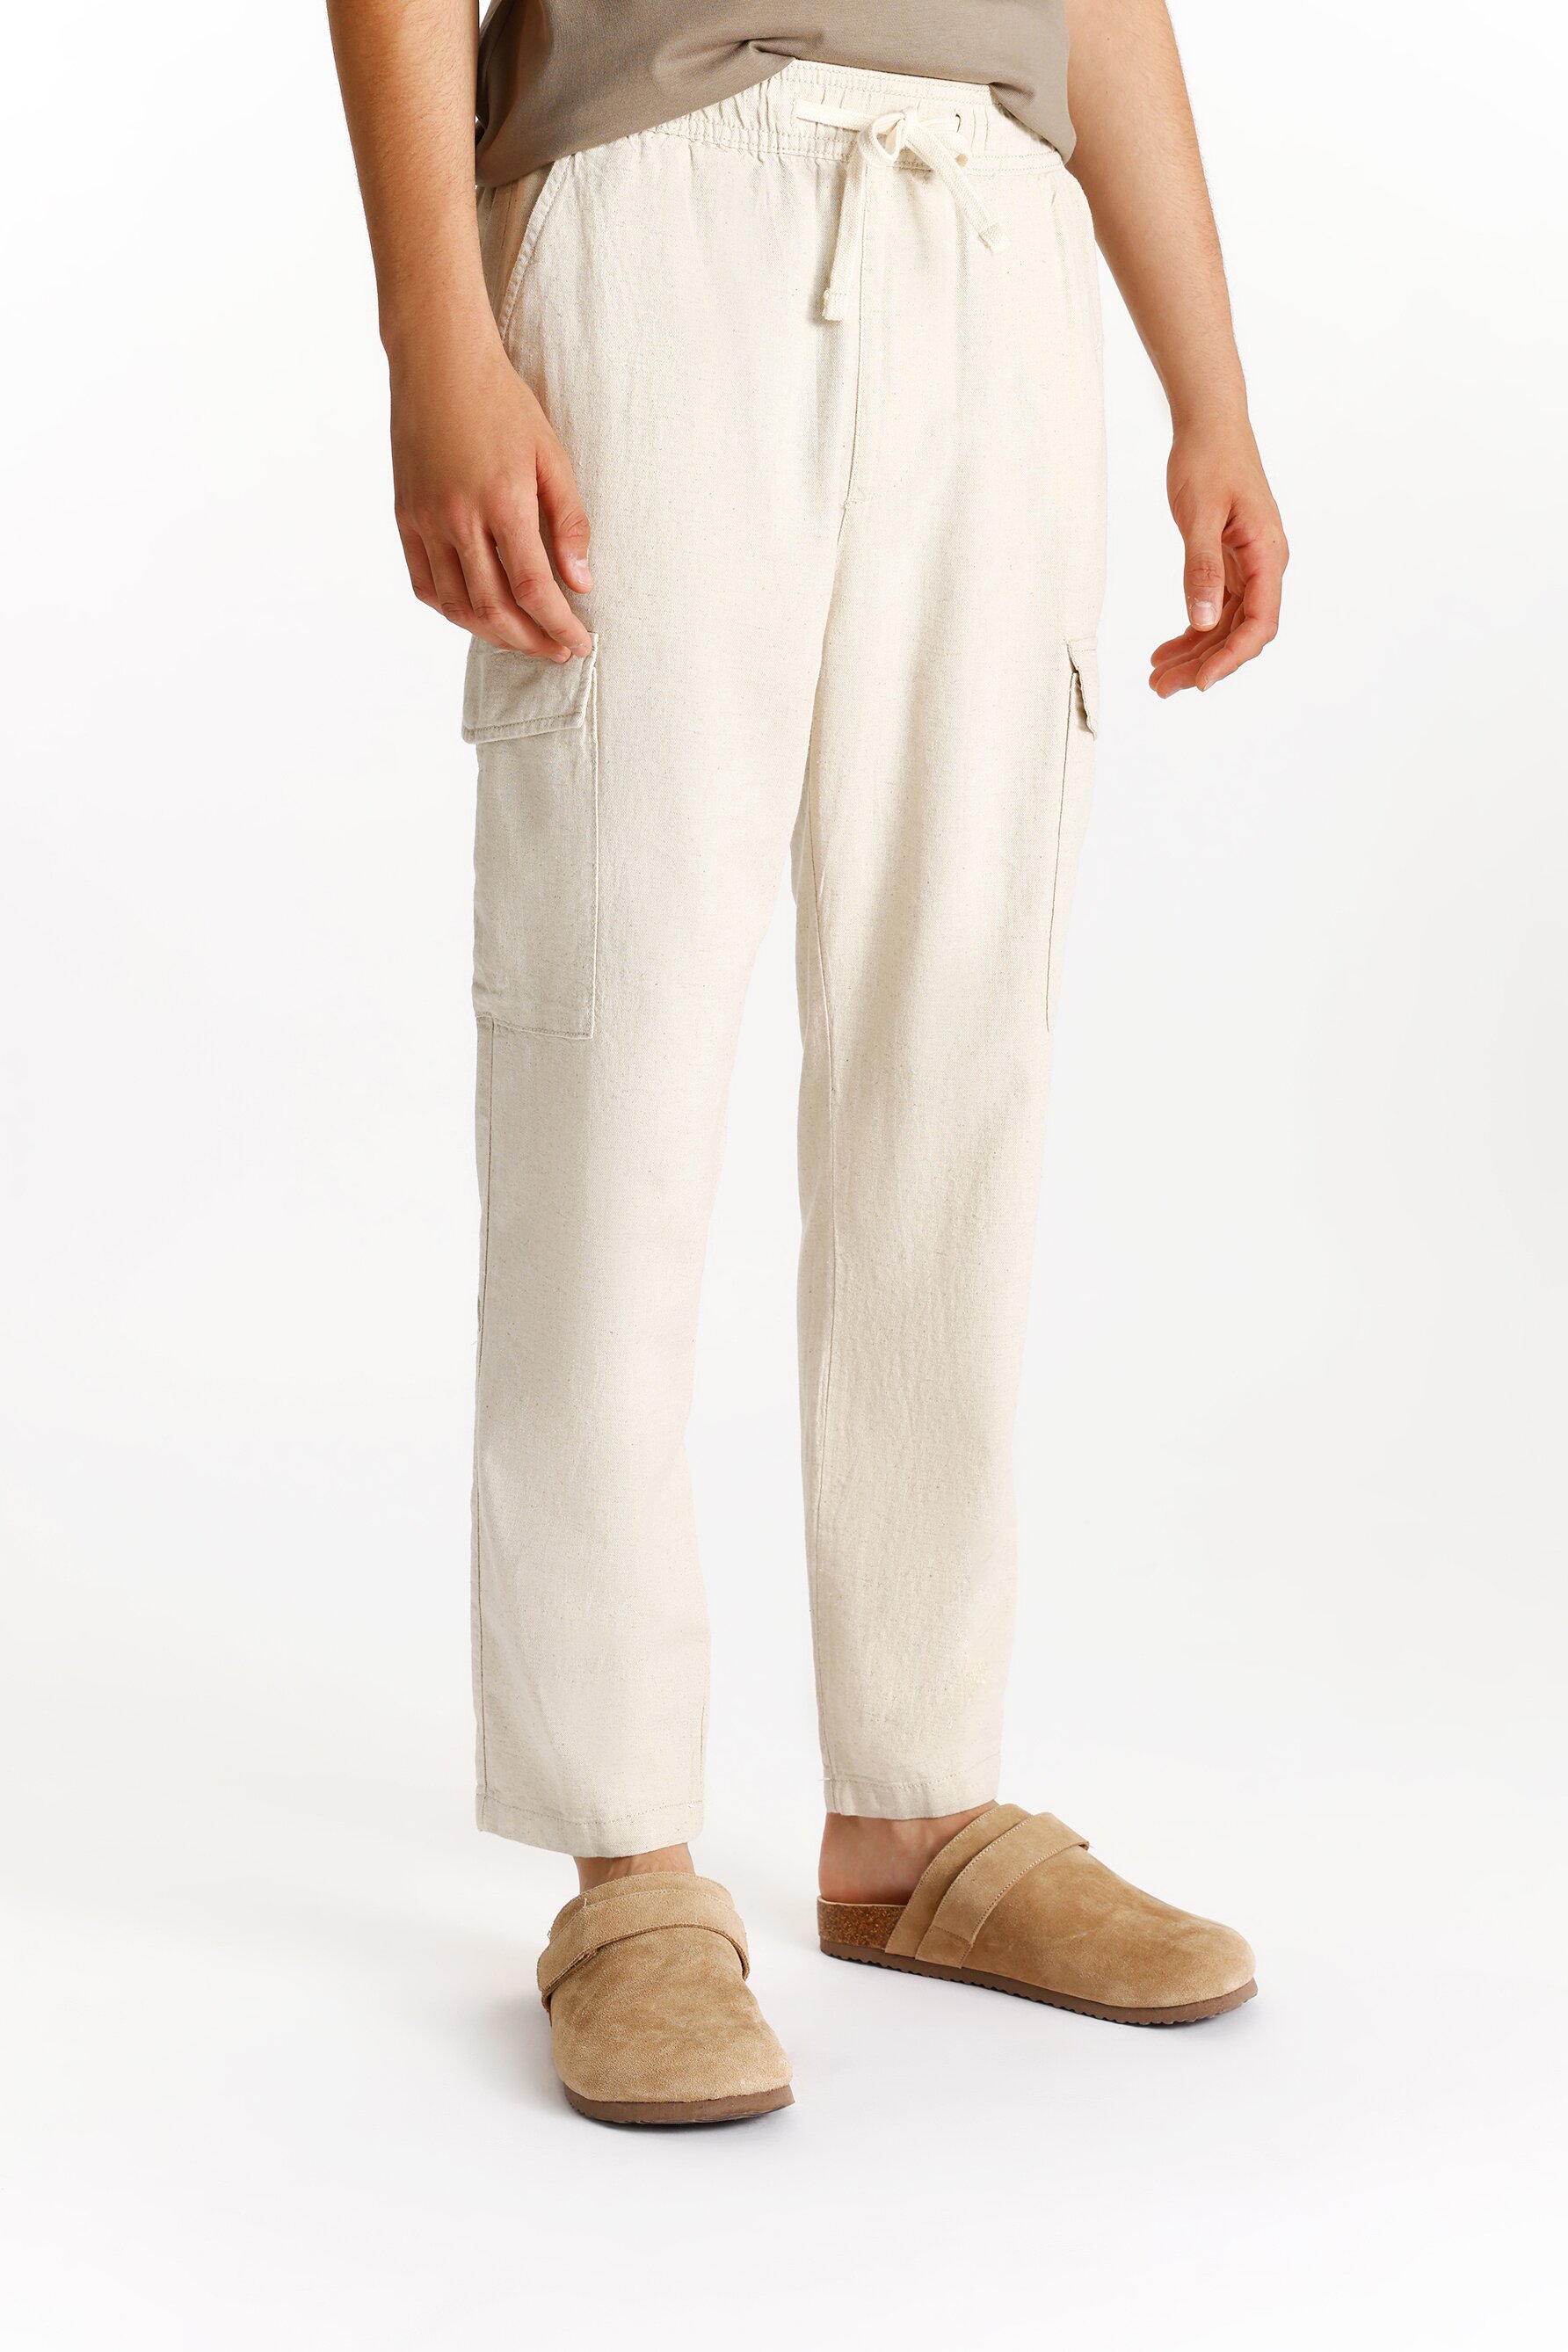 Pantalón jogger - cargo algodón - lino